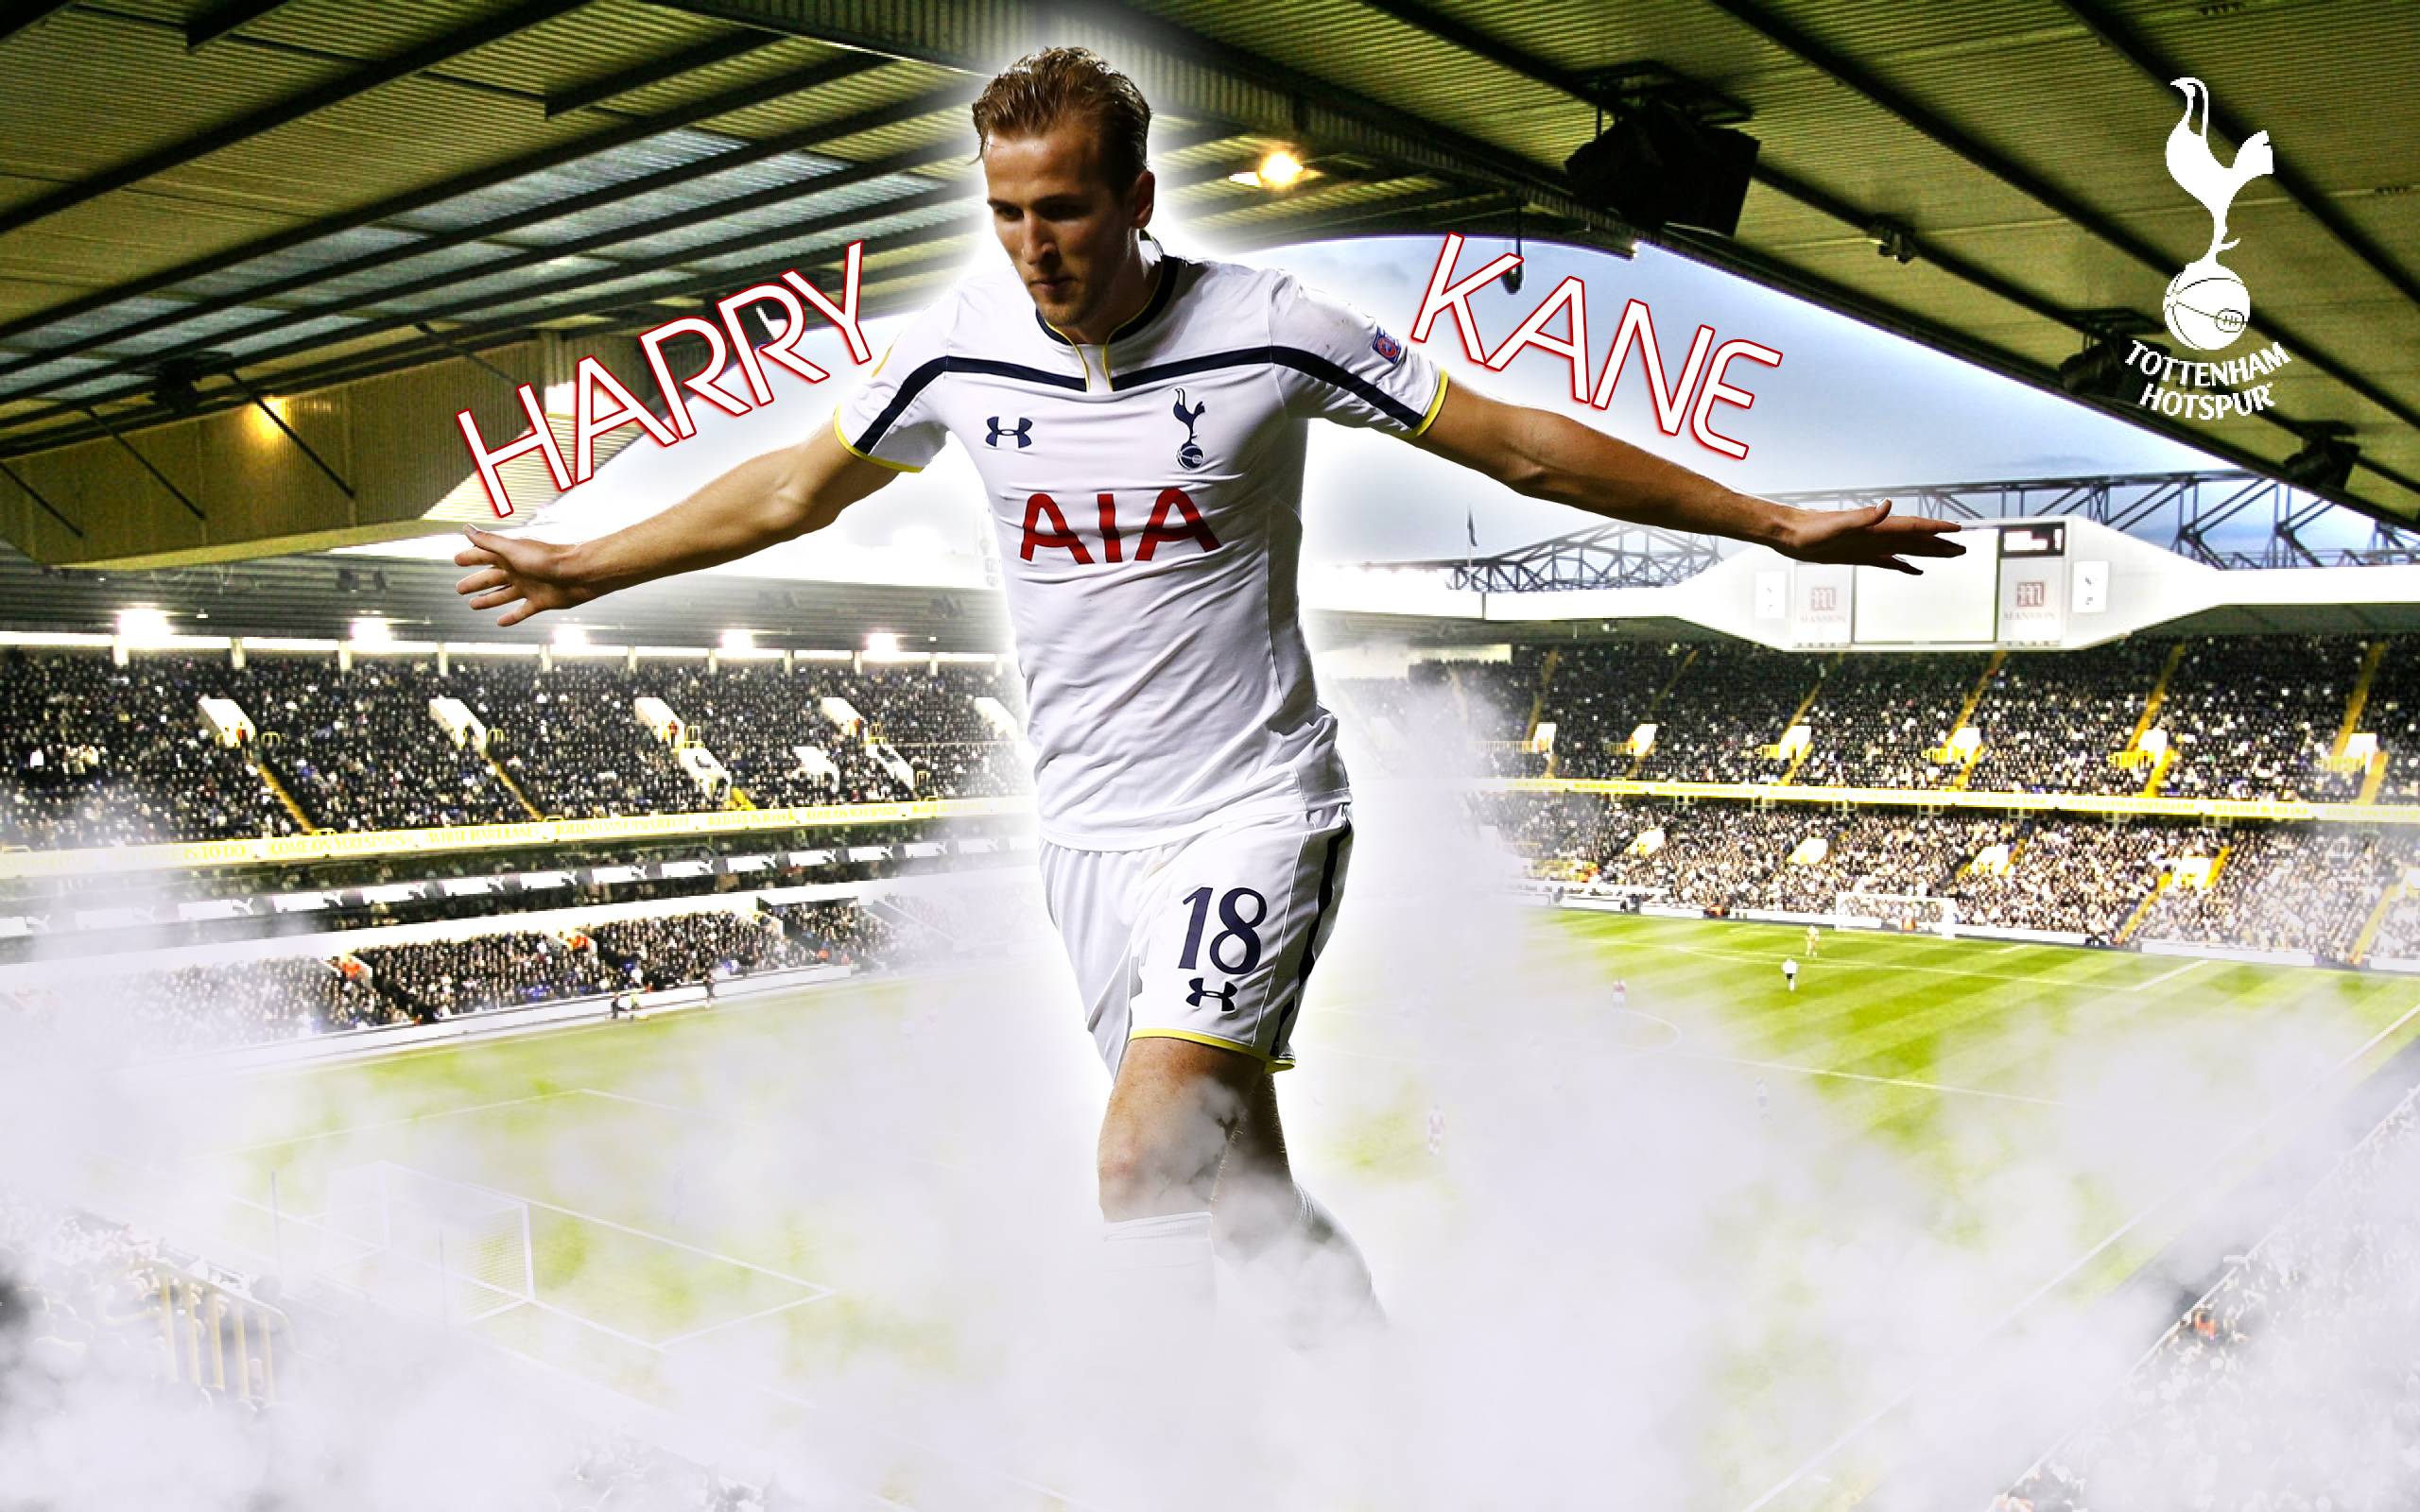 Harry Kane 2015 Tottenham Hotspur Wallpaper Wide or HD. Male